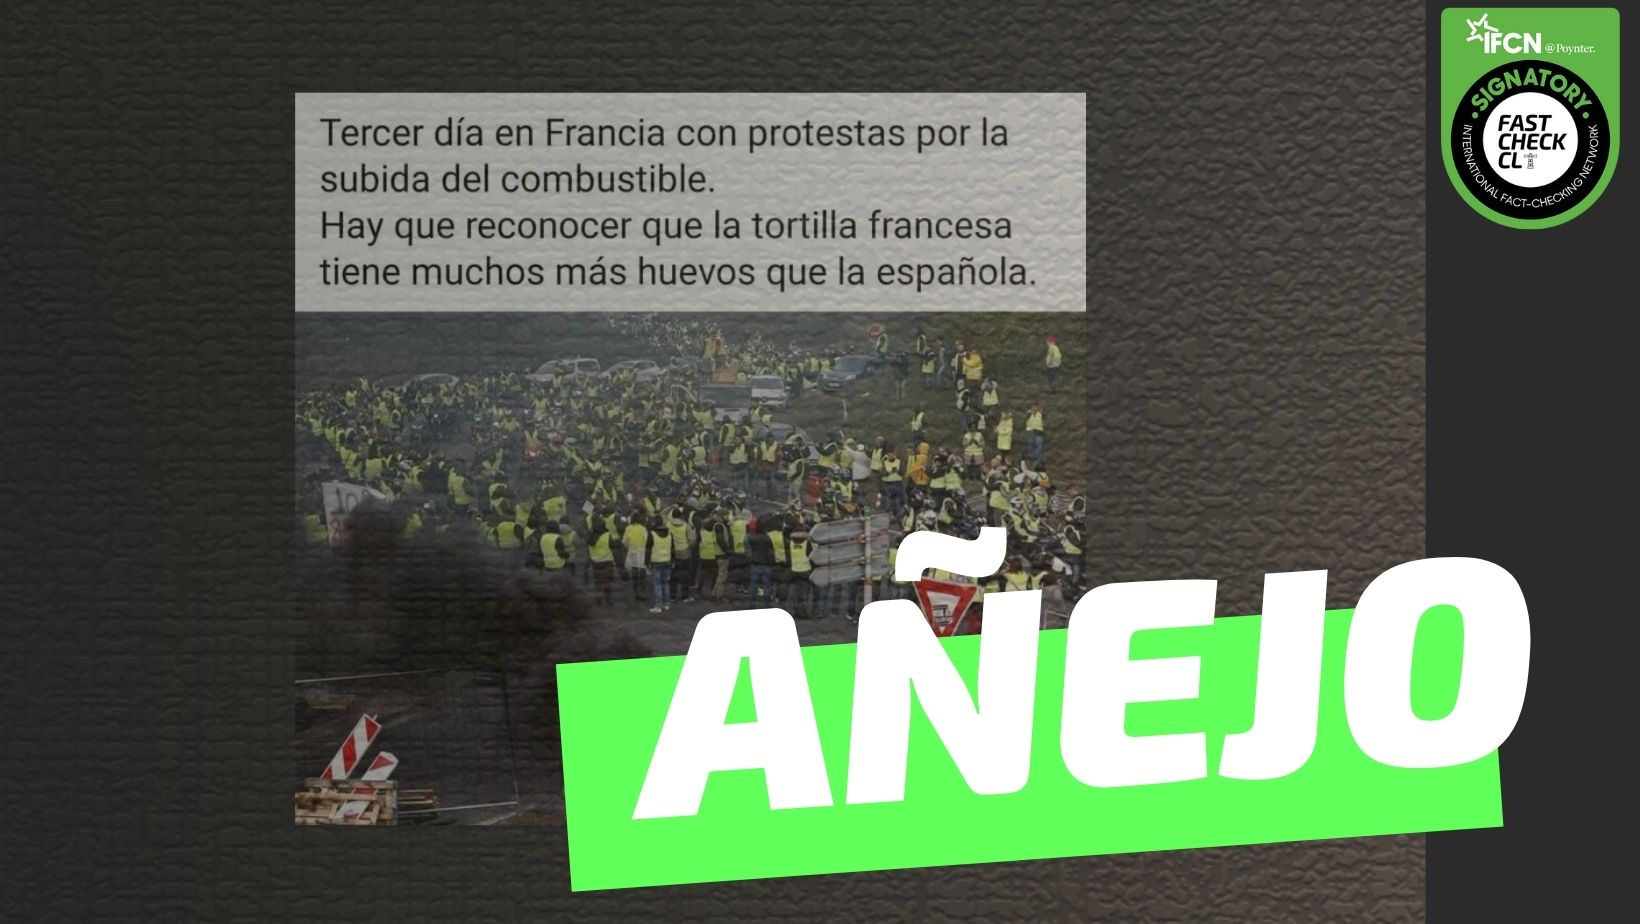 Read more about the article (Imagen) “Tercer día en Francia con protestas por la subida del combustible”: #Añejo